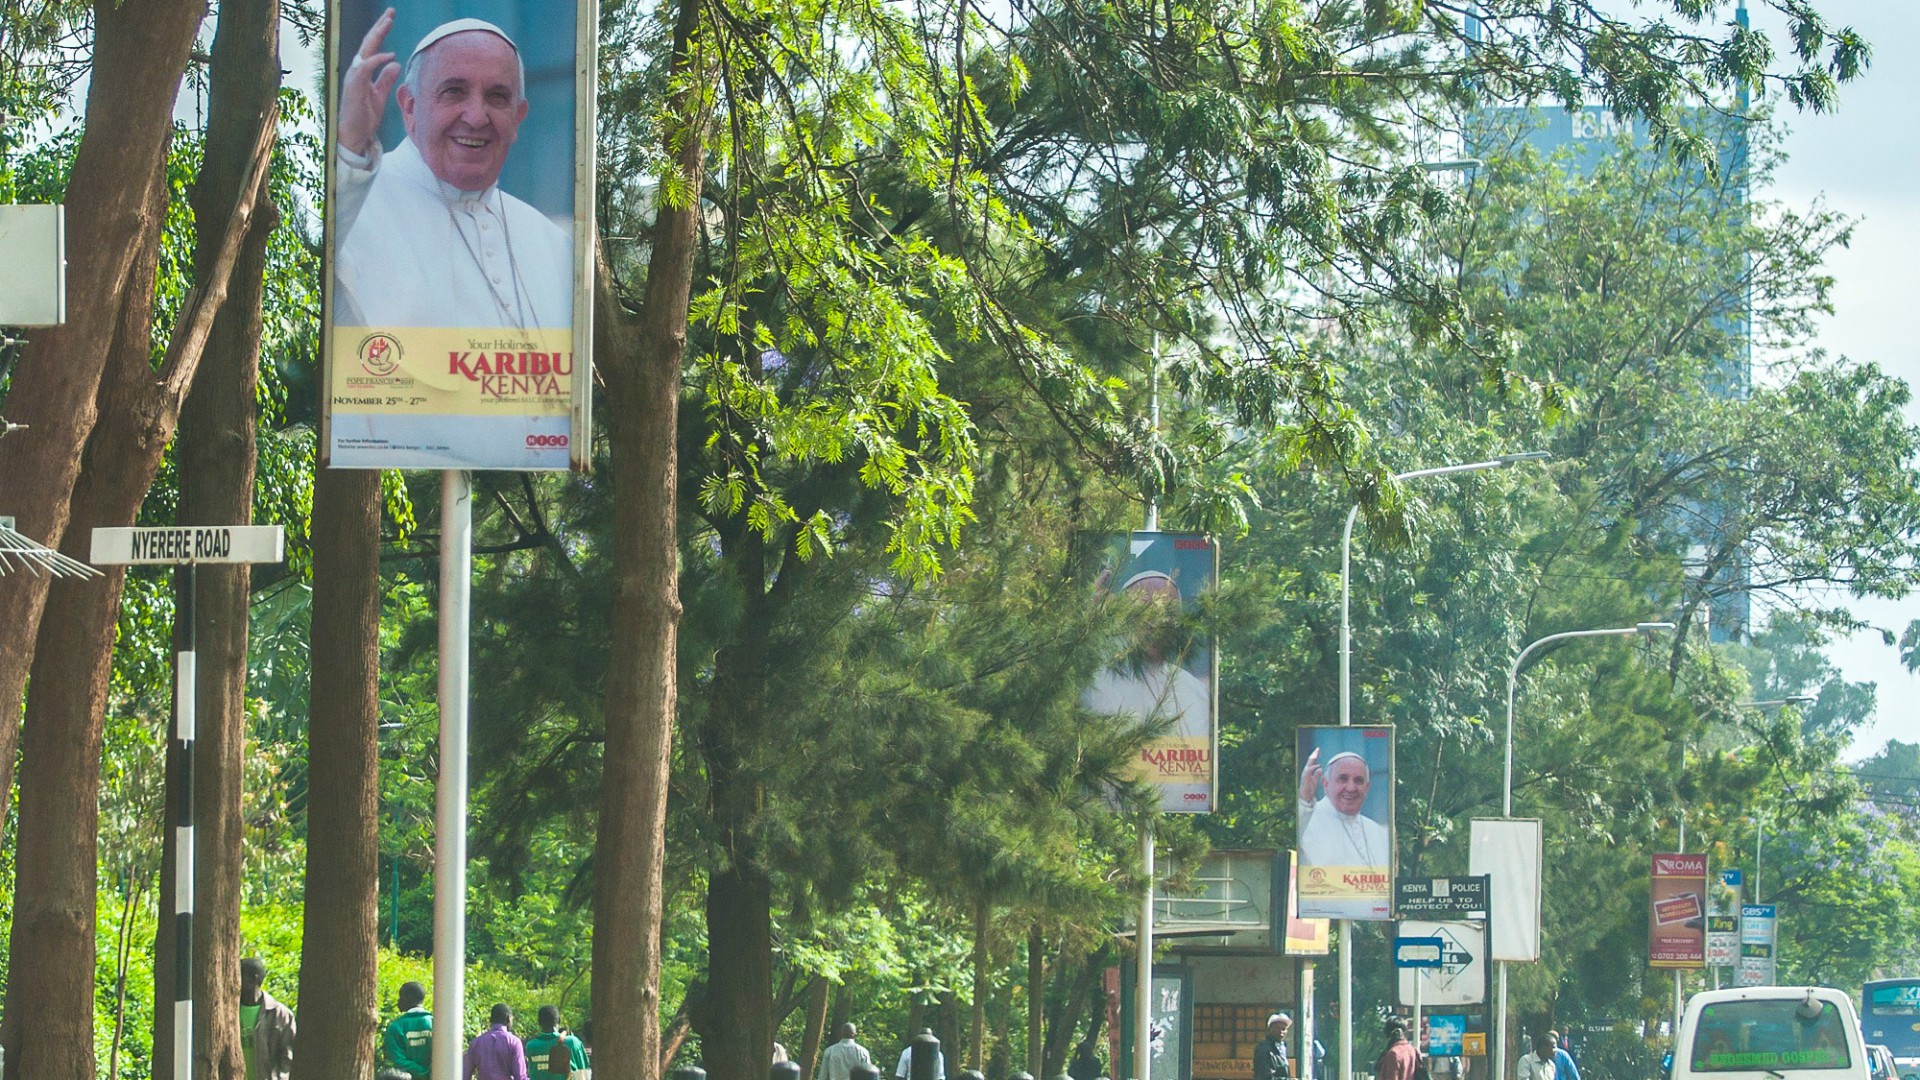 En 2015, l'Afrique attendait avec impatience le pape François | CAFOD Photo Library/Flickr/CC BY-NC-ND 2.0